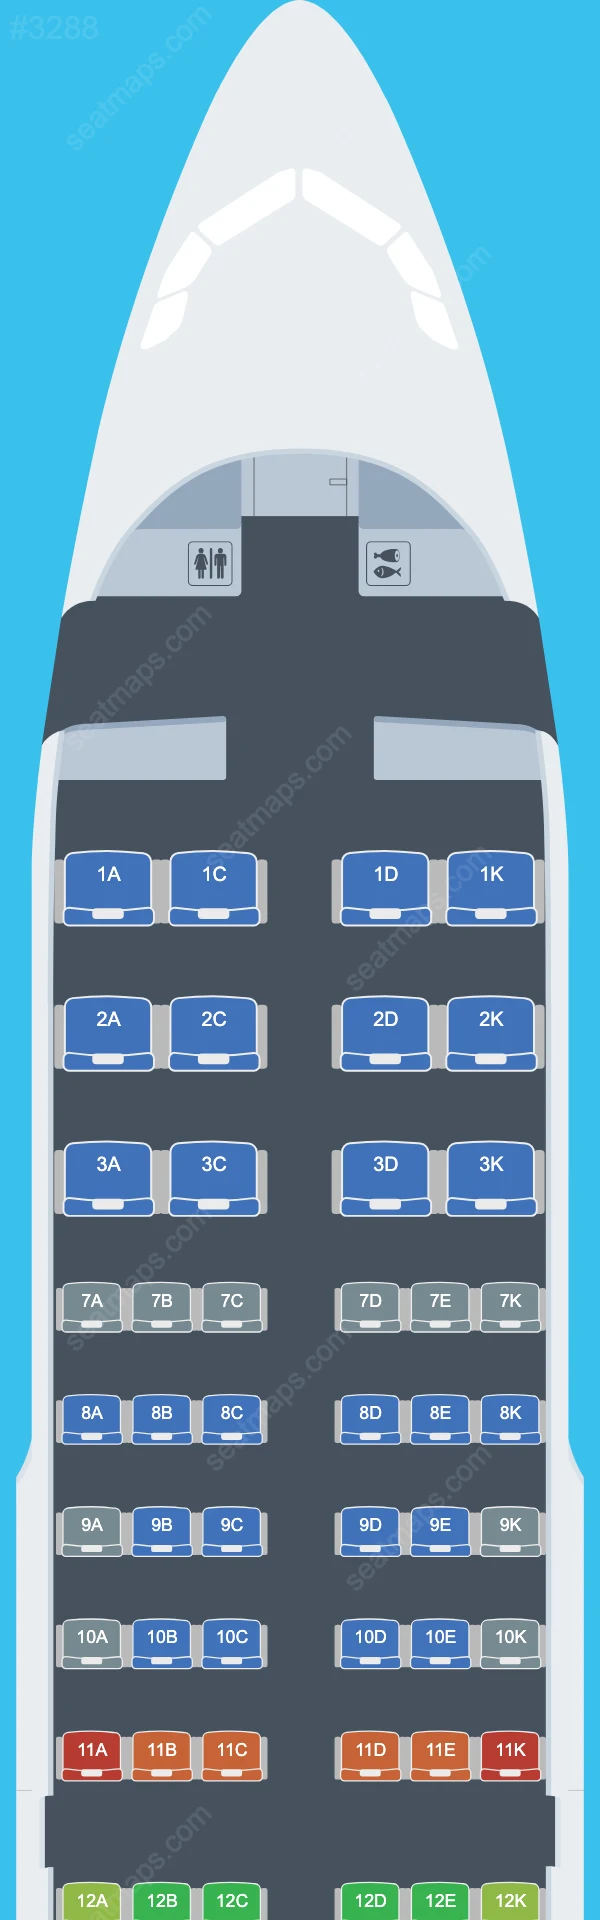 Avianca Airbus A319 Plan de Salle A319-100